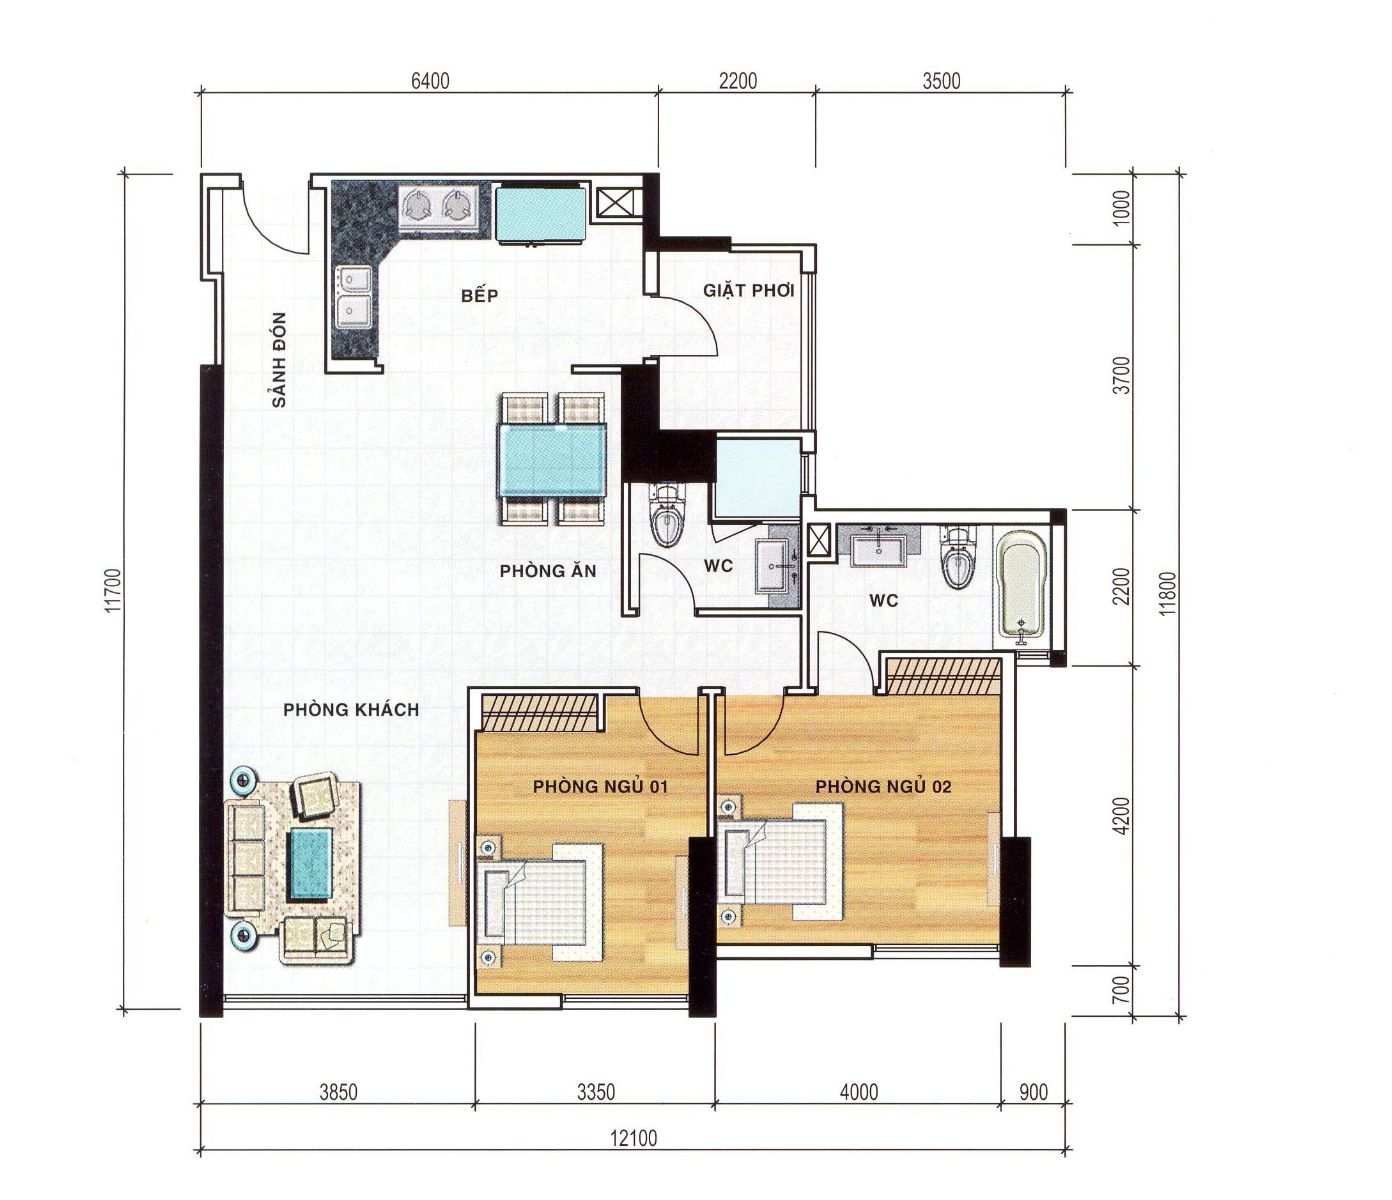 Thiết kế, mẫu nhà của Khu căn hộ Cao cấp Chánh Hưng | ảnh 2